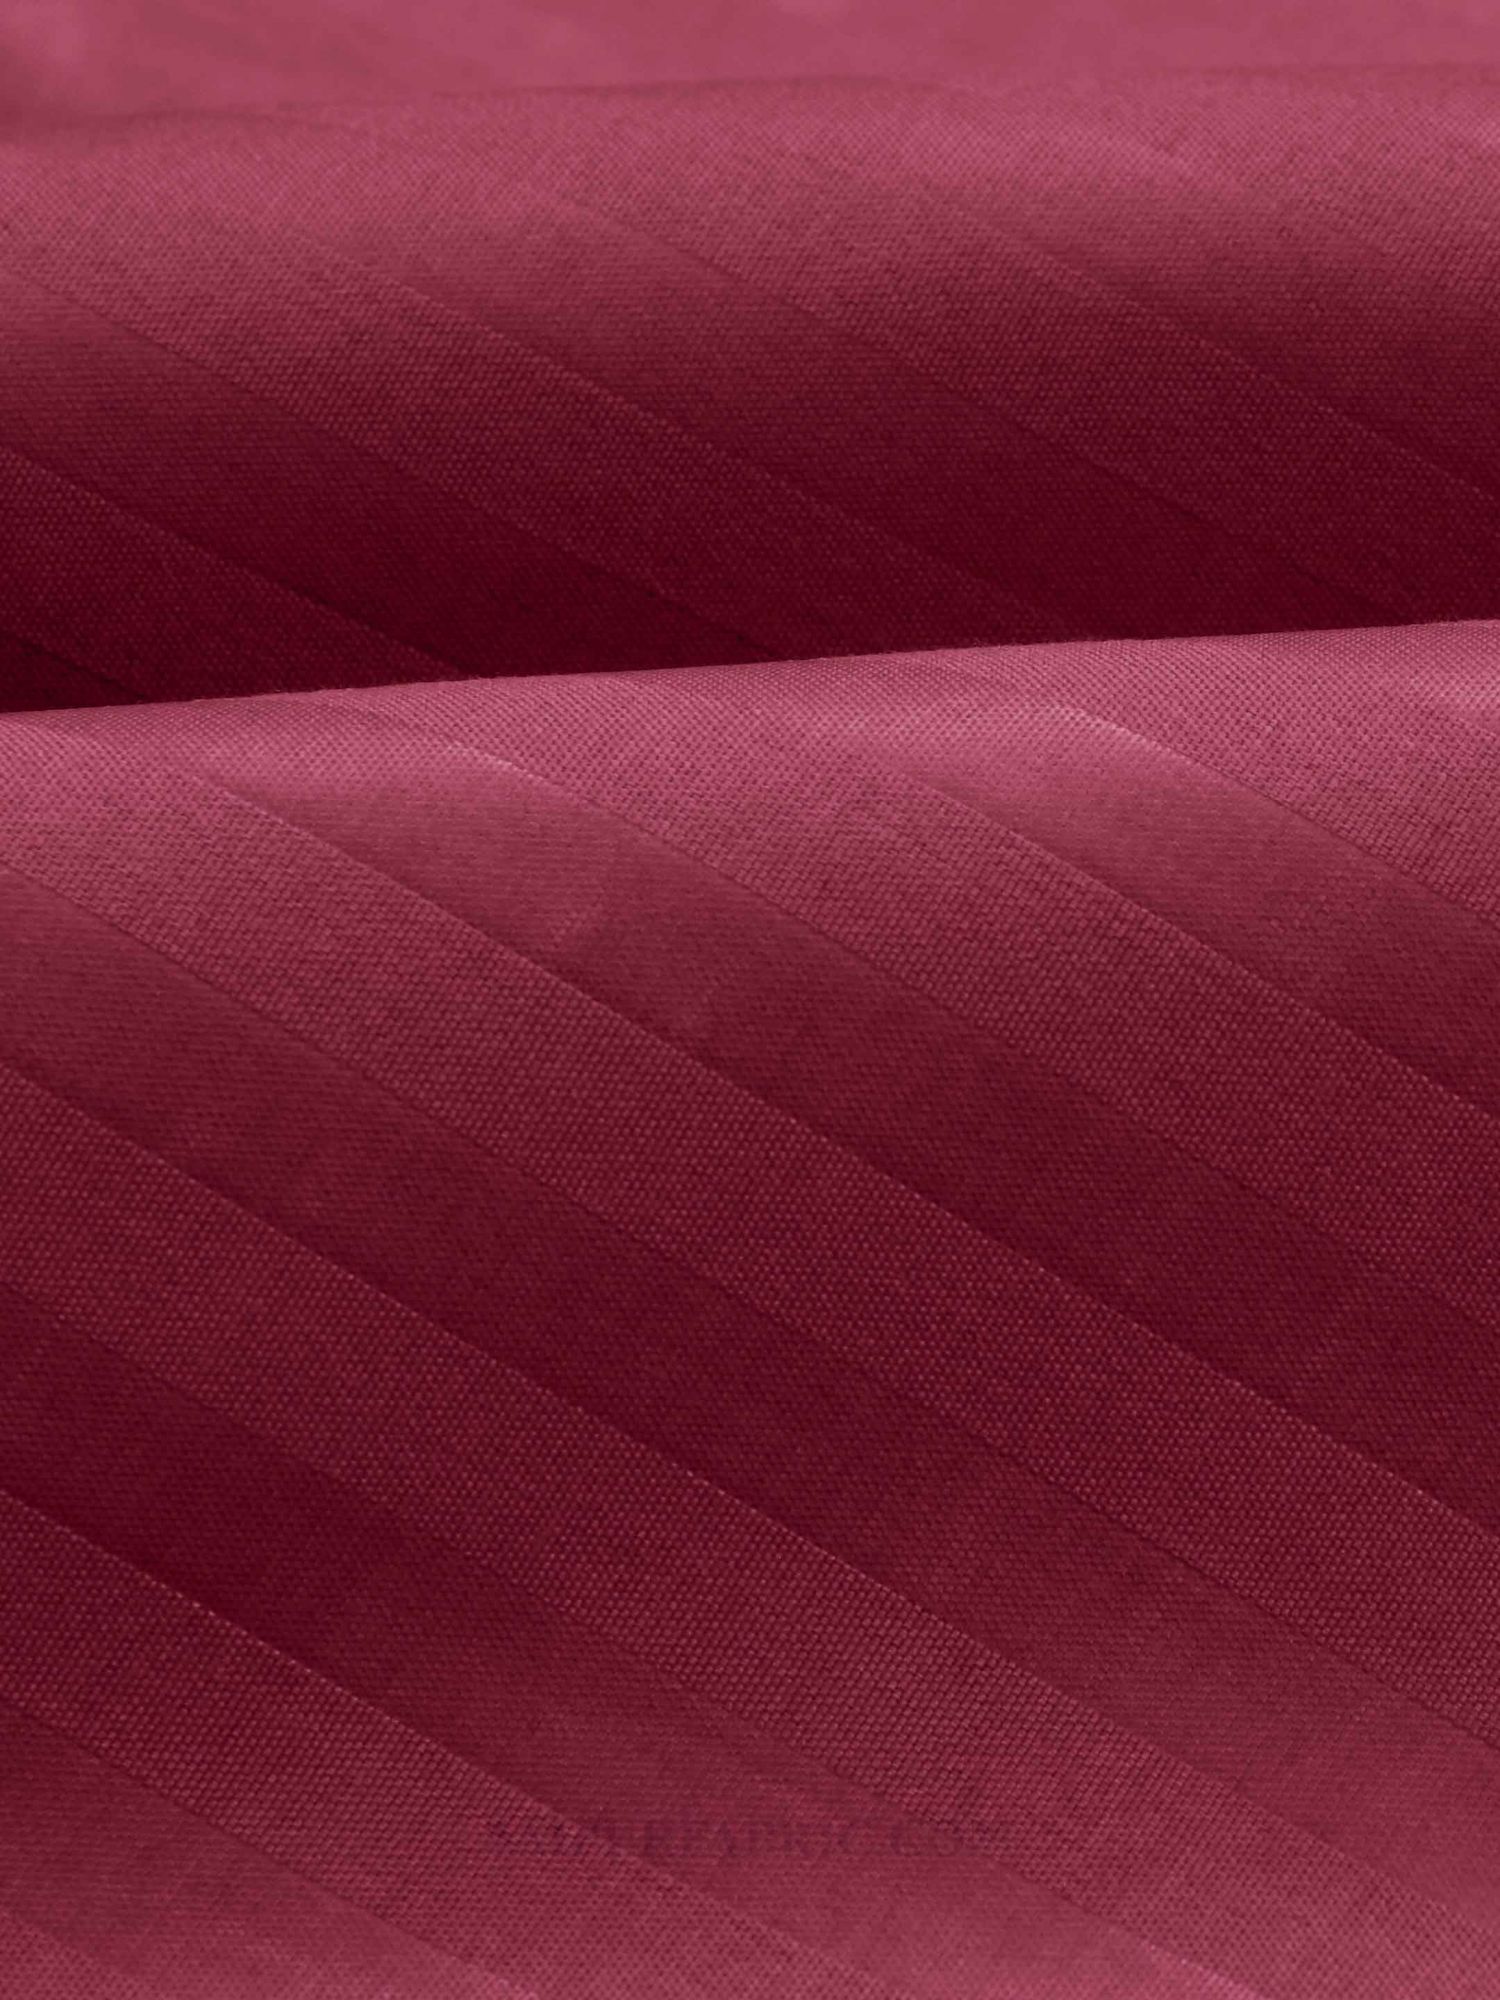 Dark Pink Satin Stripes Single BedSheet